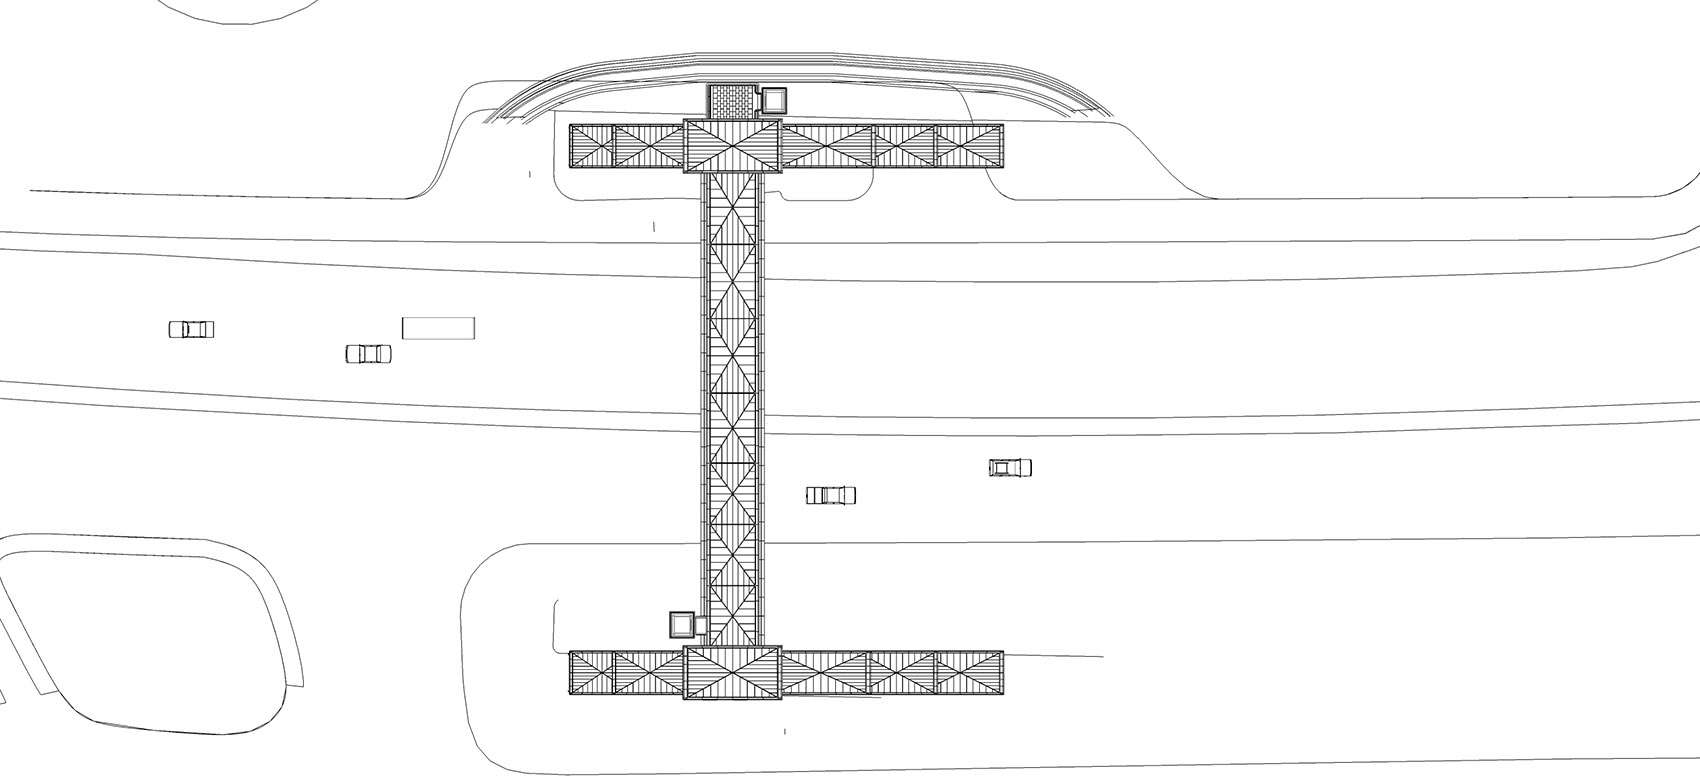 深圳水围天桥/利用想象和创意赋予天桥品质感和仪式感-65